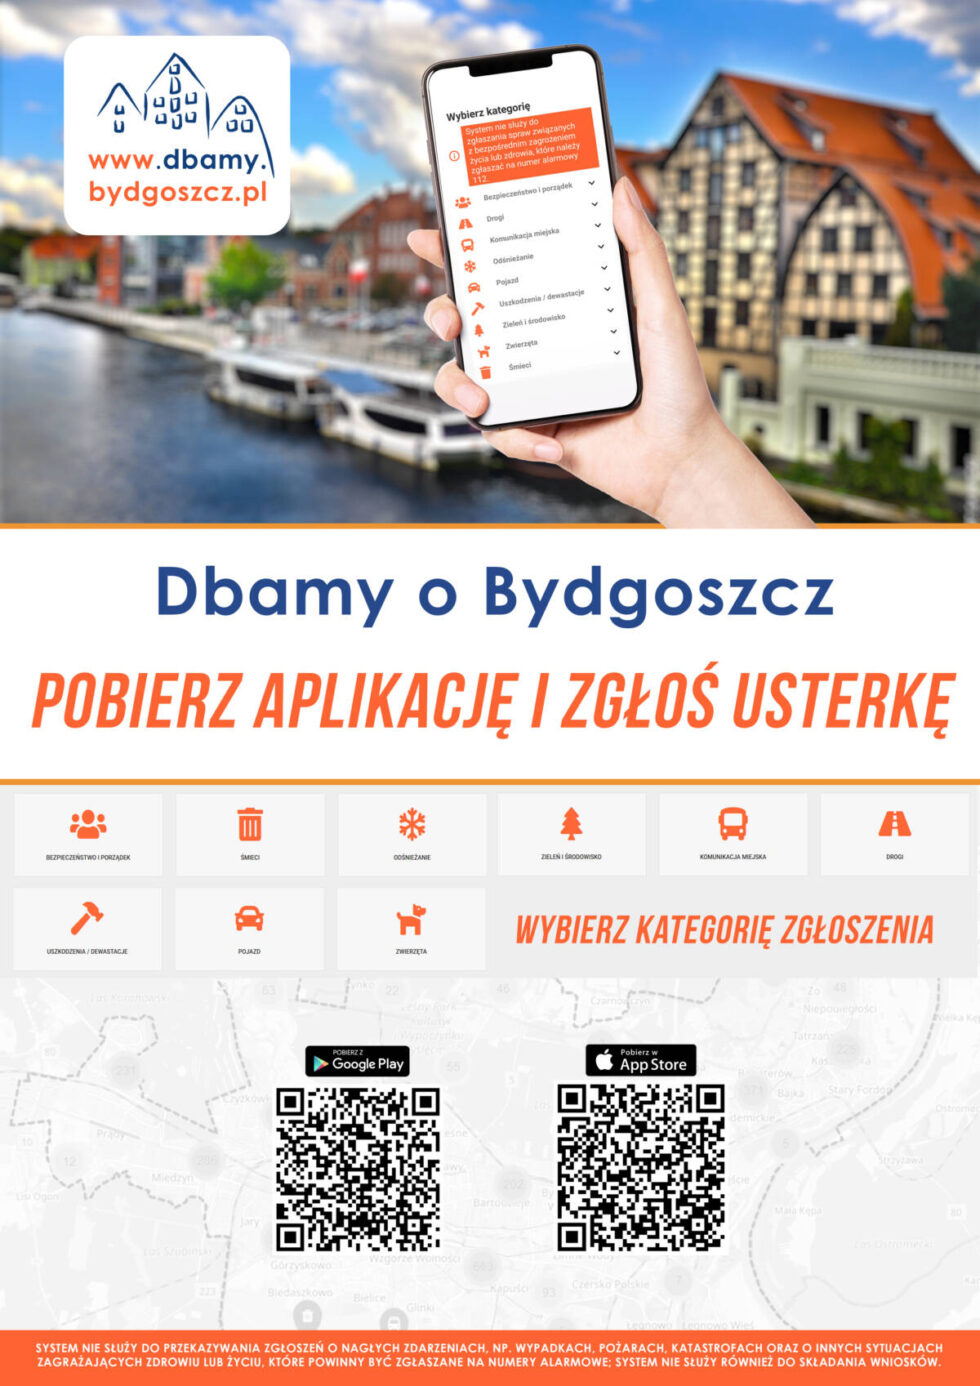 Nic tak nie irytuje mieszkańców jak źle zaparkowane auta – pokazuje to aplikacja Dbamy o Bydgoszcz